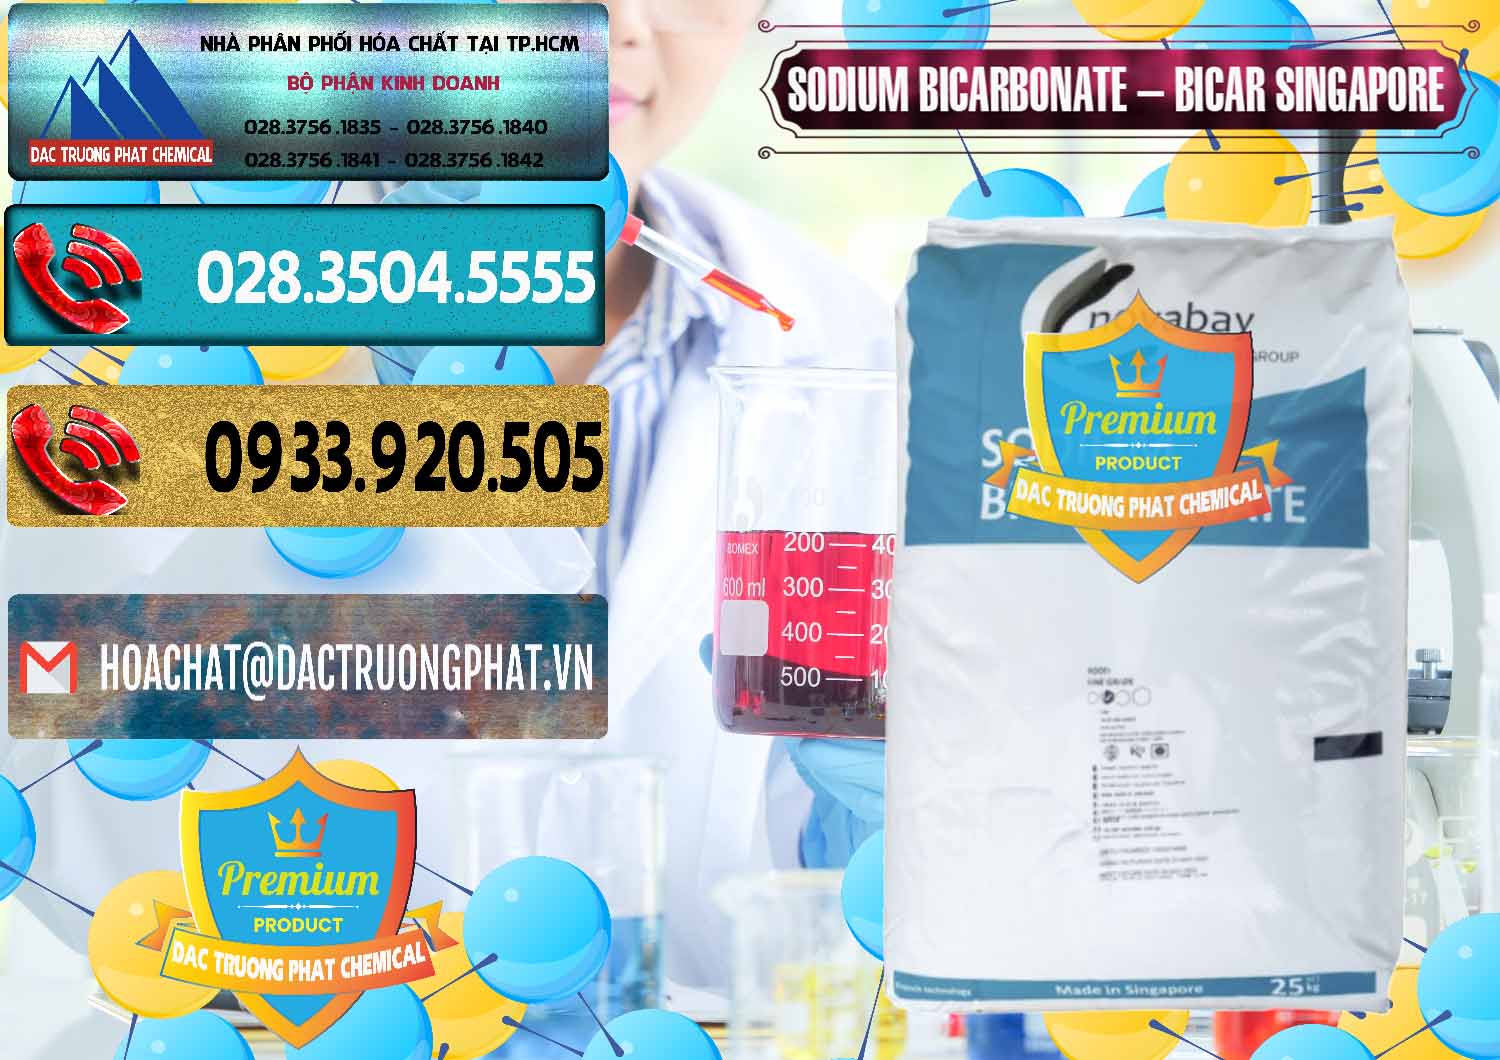 Nơi chuyên bán - cung cấp Sodium Bicarbonate – Bicar NaHCO3 Singapore - 0411 - Nơi phân phối ( cung cấp ) hóa chất tại TP.HCM - hoachatdetnhuom.com